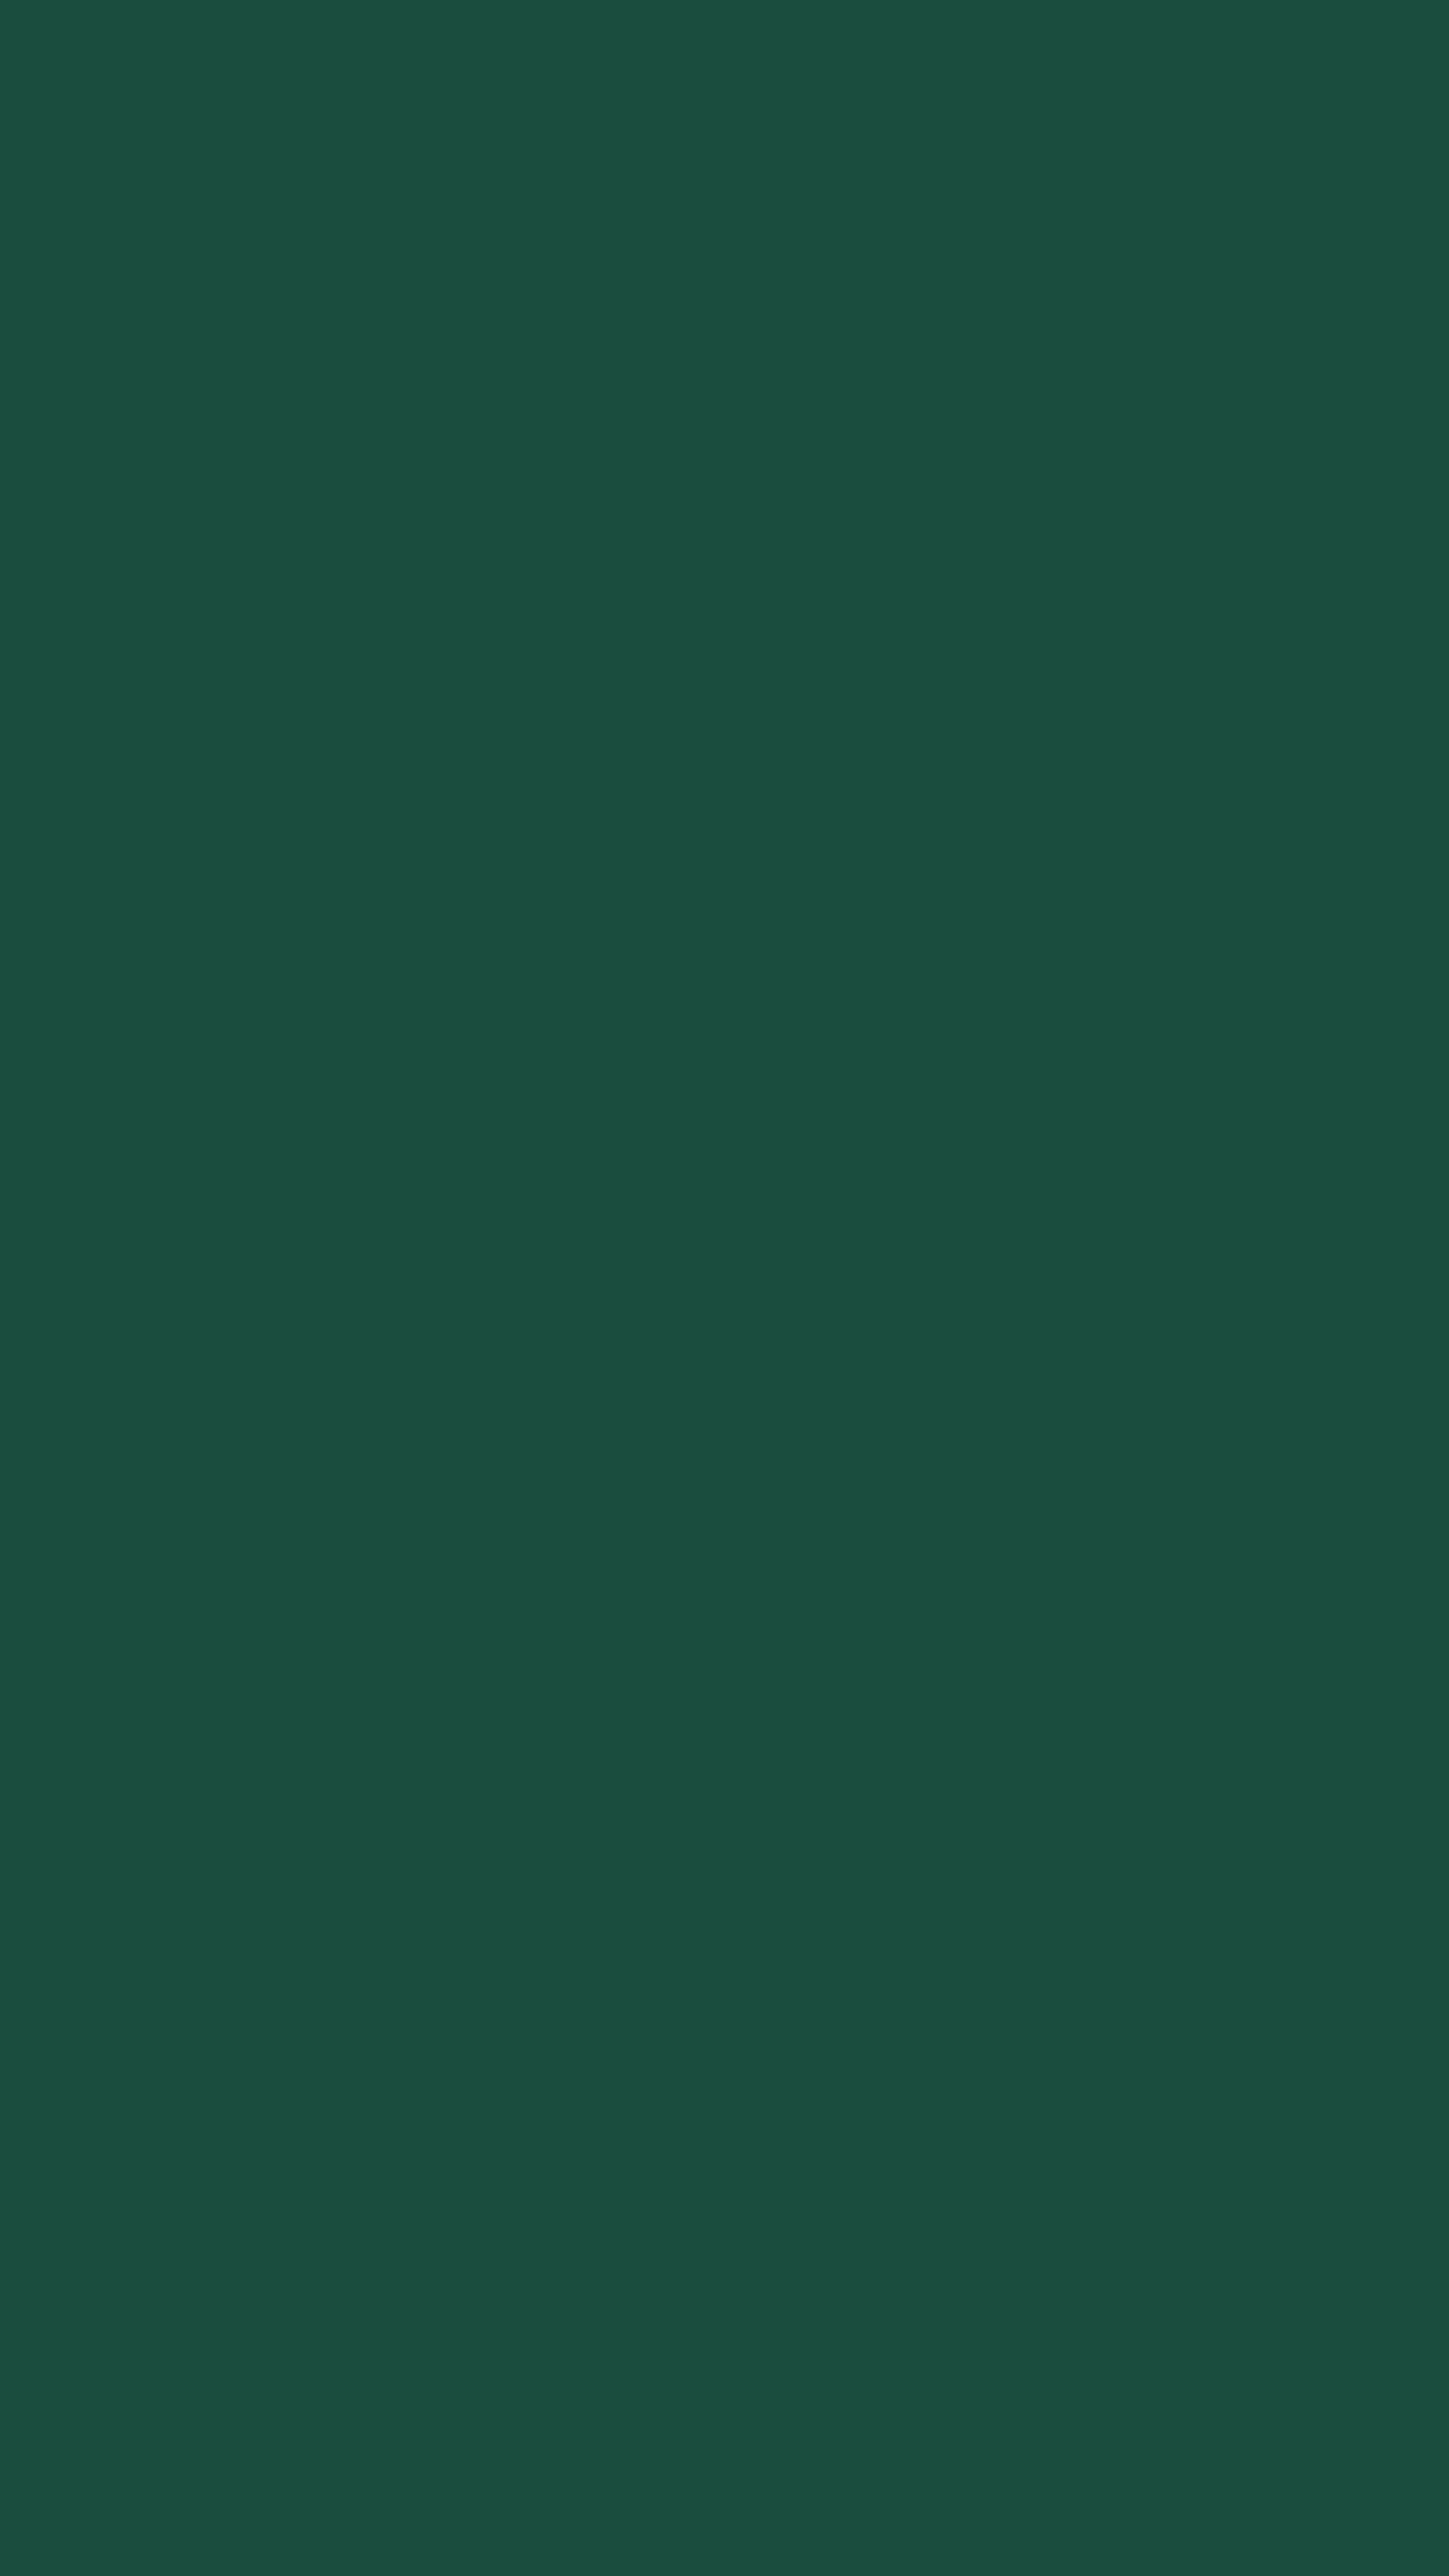 Emerald Green Wallpapers - Top Những Hình Ảnh Đẹp